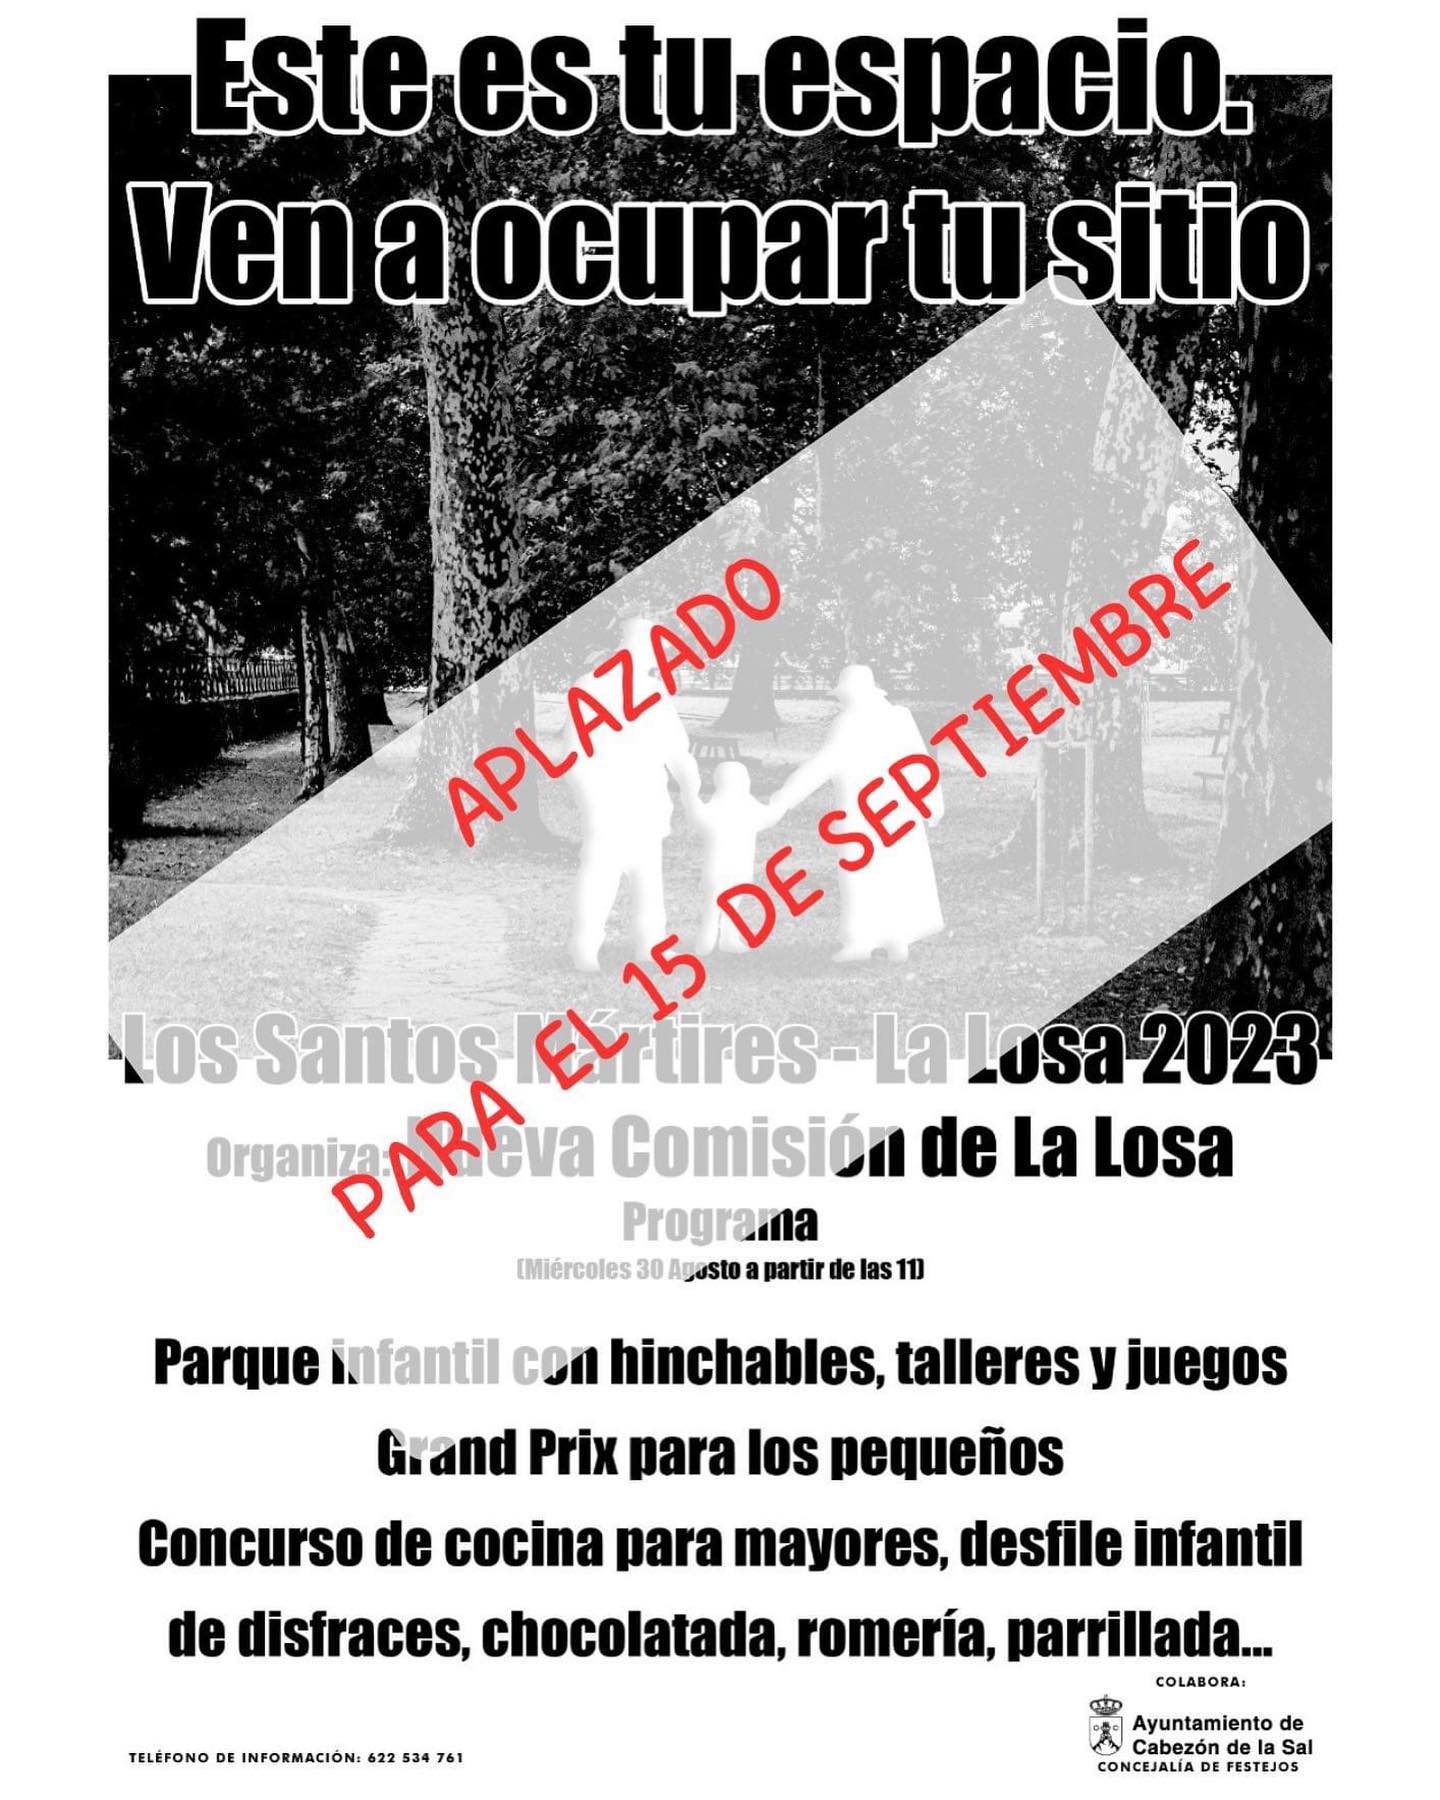 📣 Nos comunican que la programación de actividades para el día de los Santos Mártires en el barrio de la Losa, 30 de agosto, queda aplazada por causas meteorológicas al 15 de septiembre.